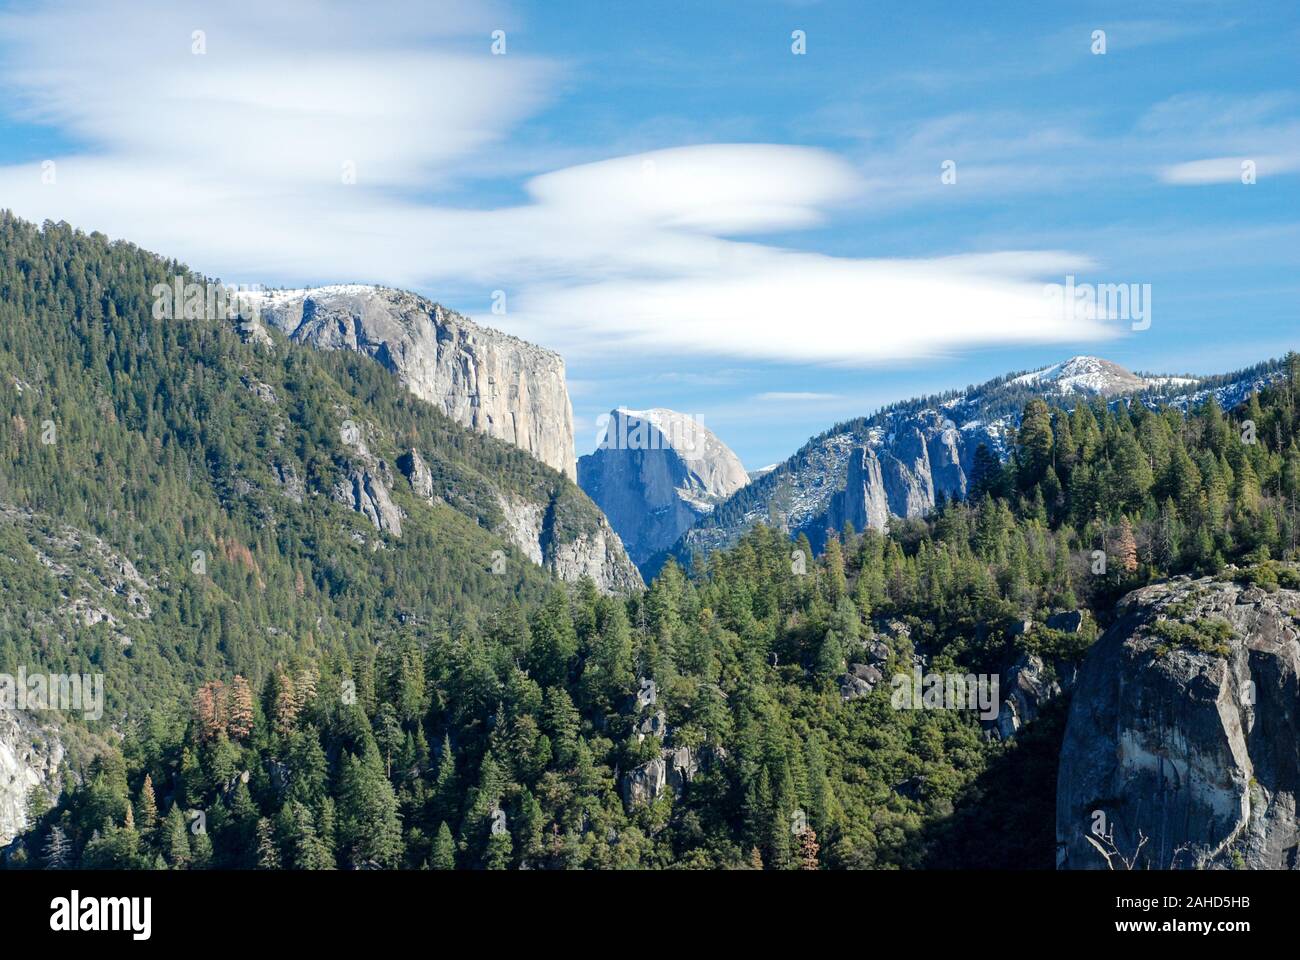 Half Dome, Yosemite Valley, California Stock Photo